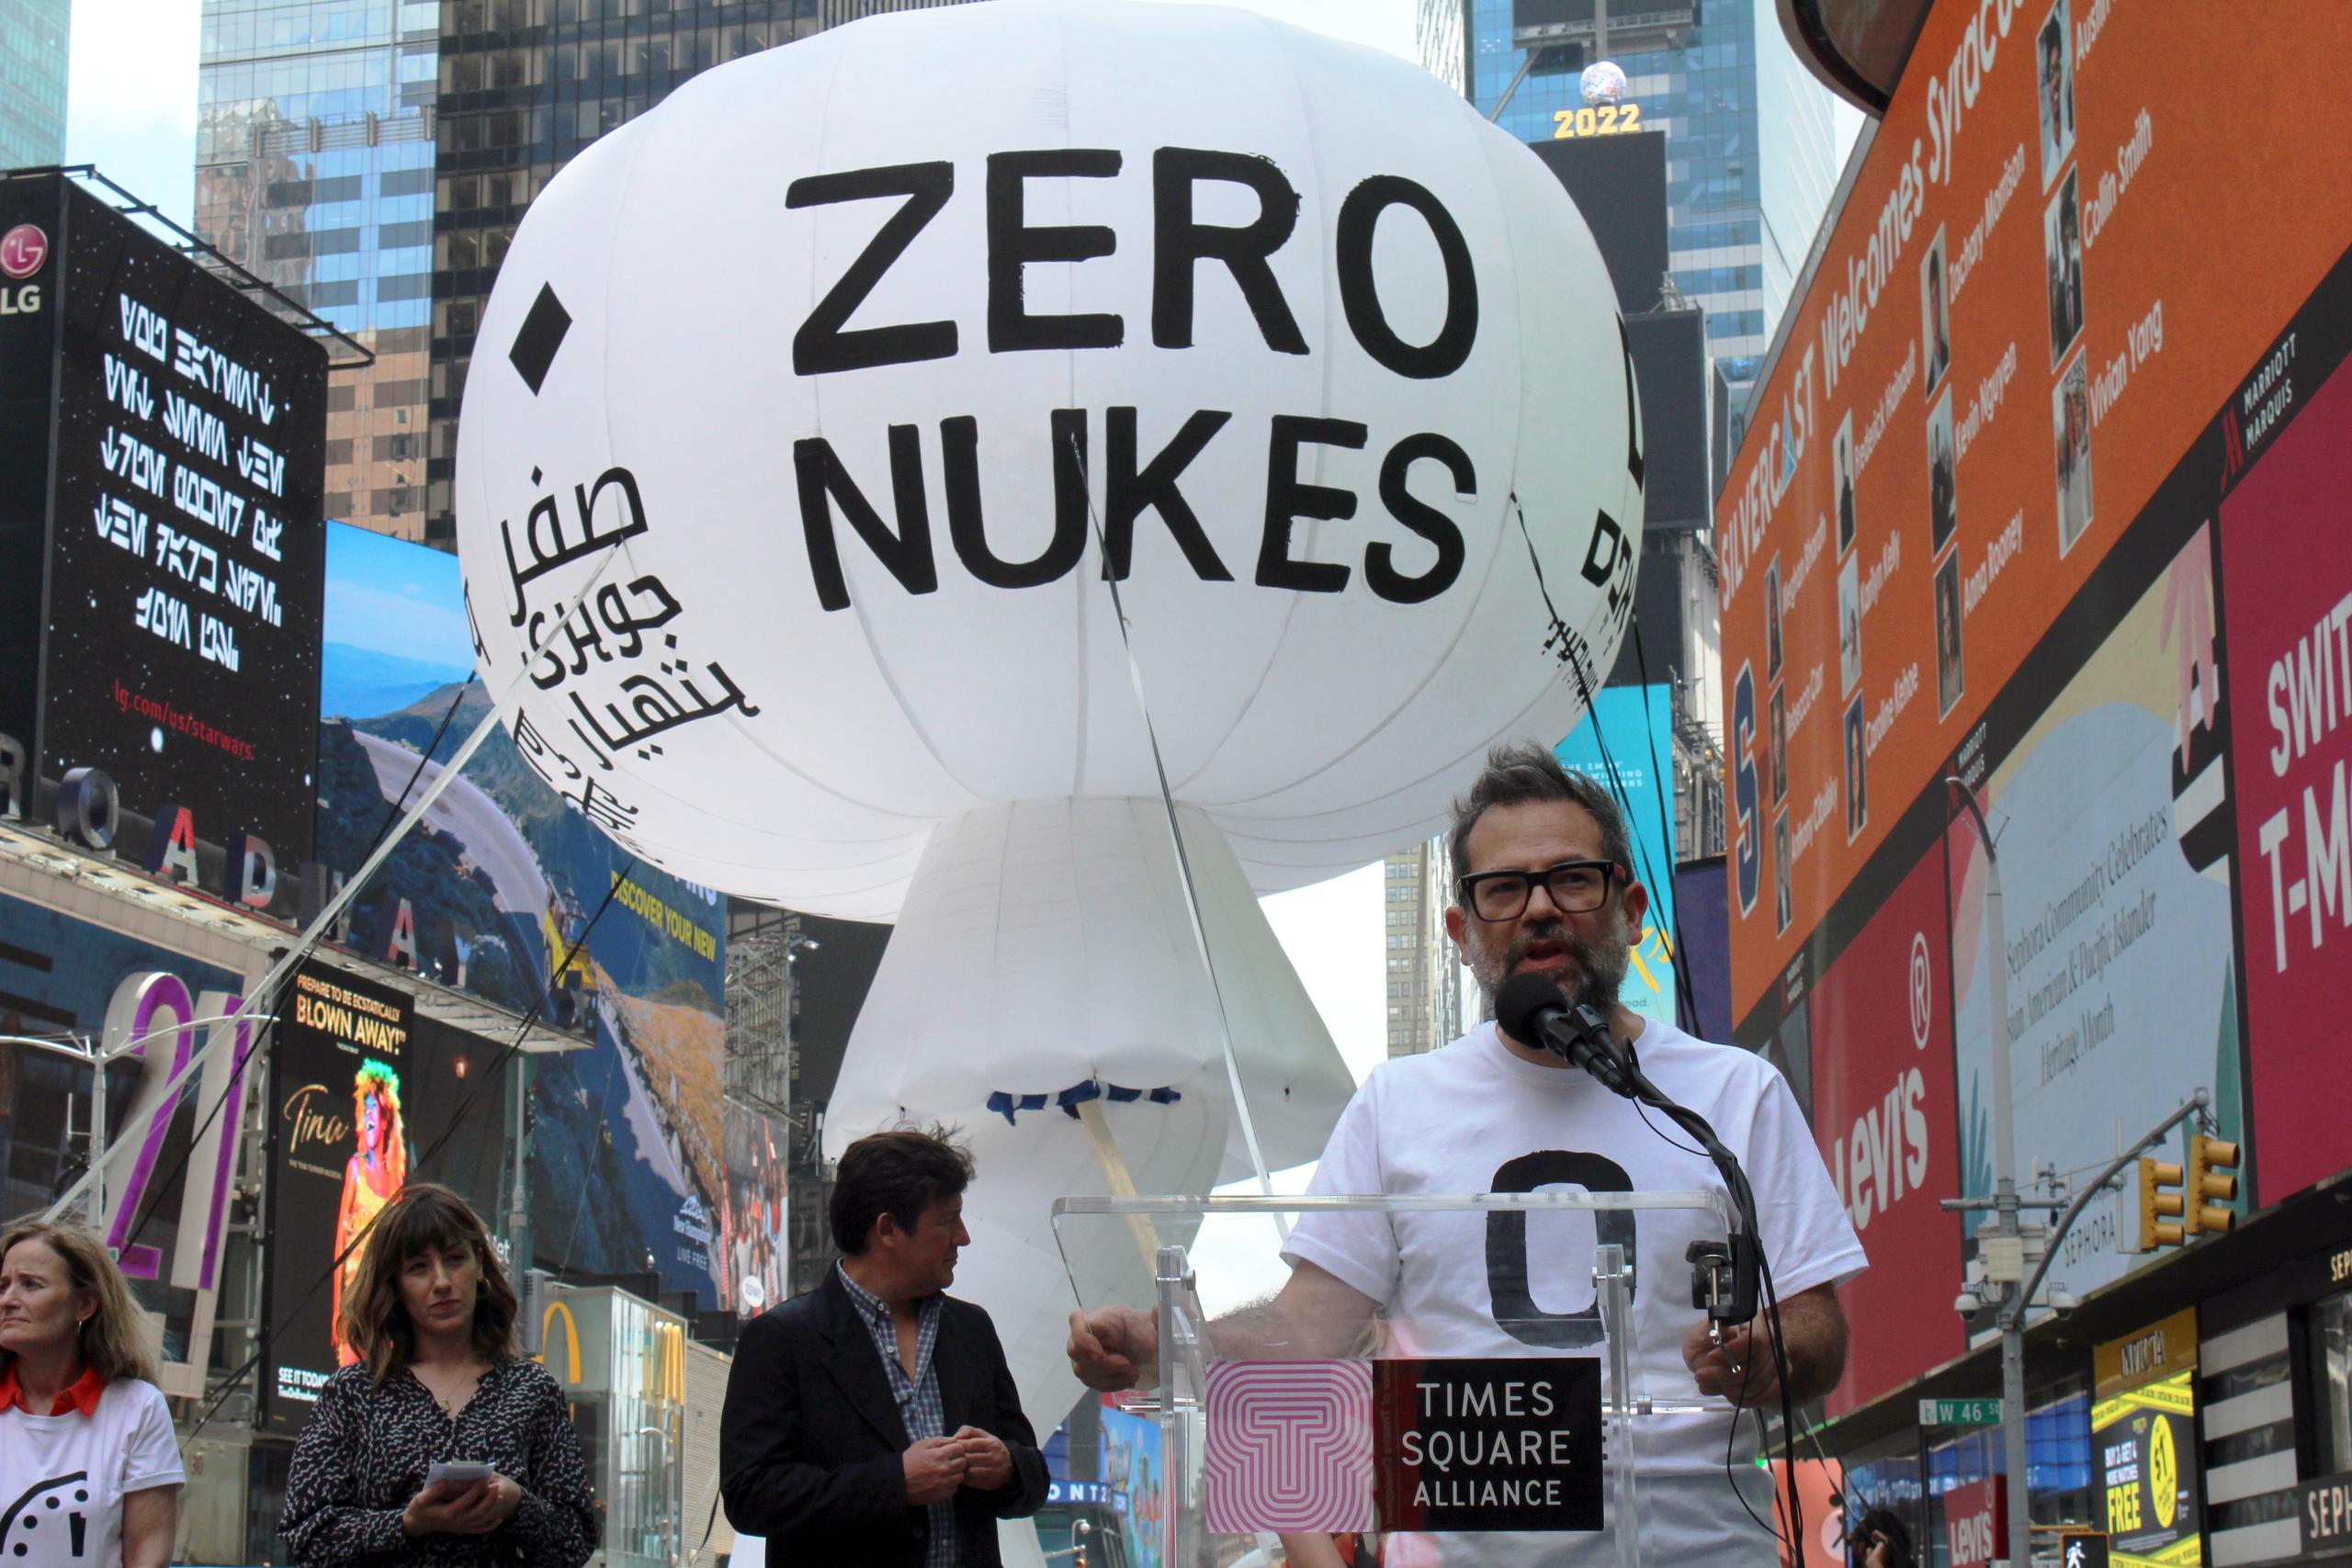 El artista mexicano Pedro Reyes habla durante la instalación del globo inflable, que viene coronada por el lema “zero nuke” (cero armas nucleares, en español).